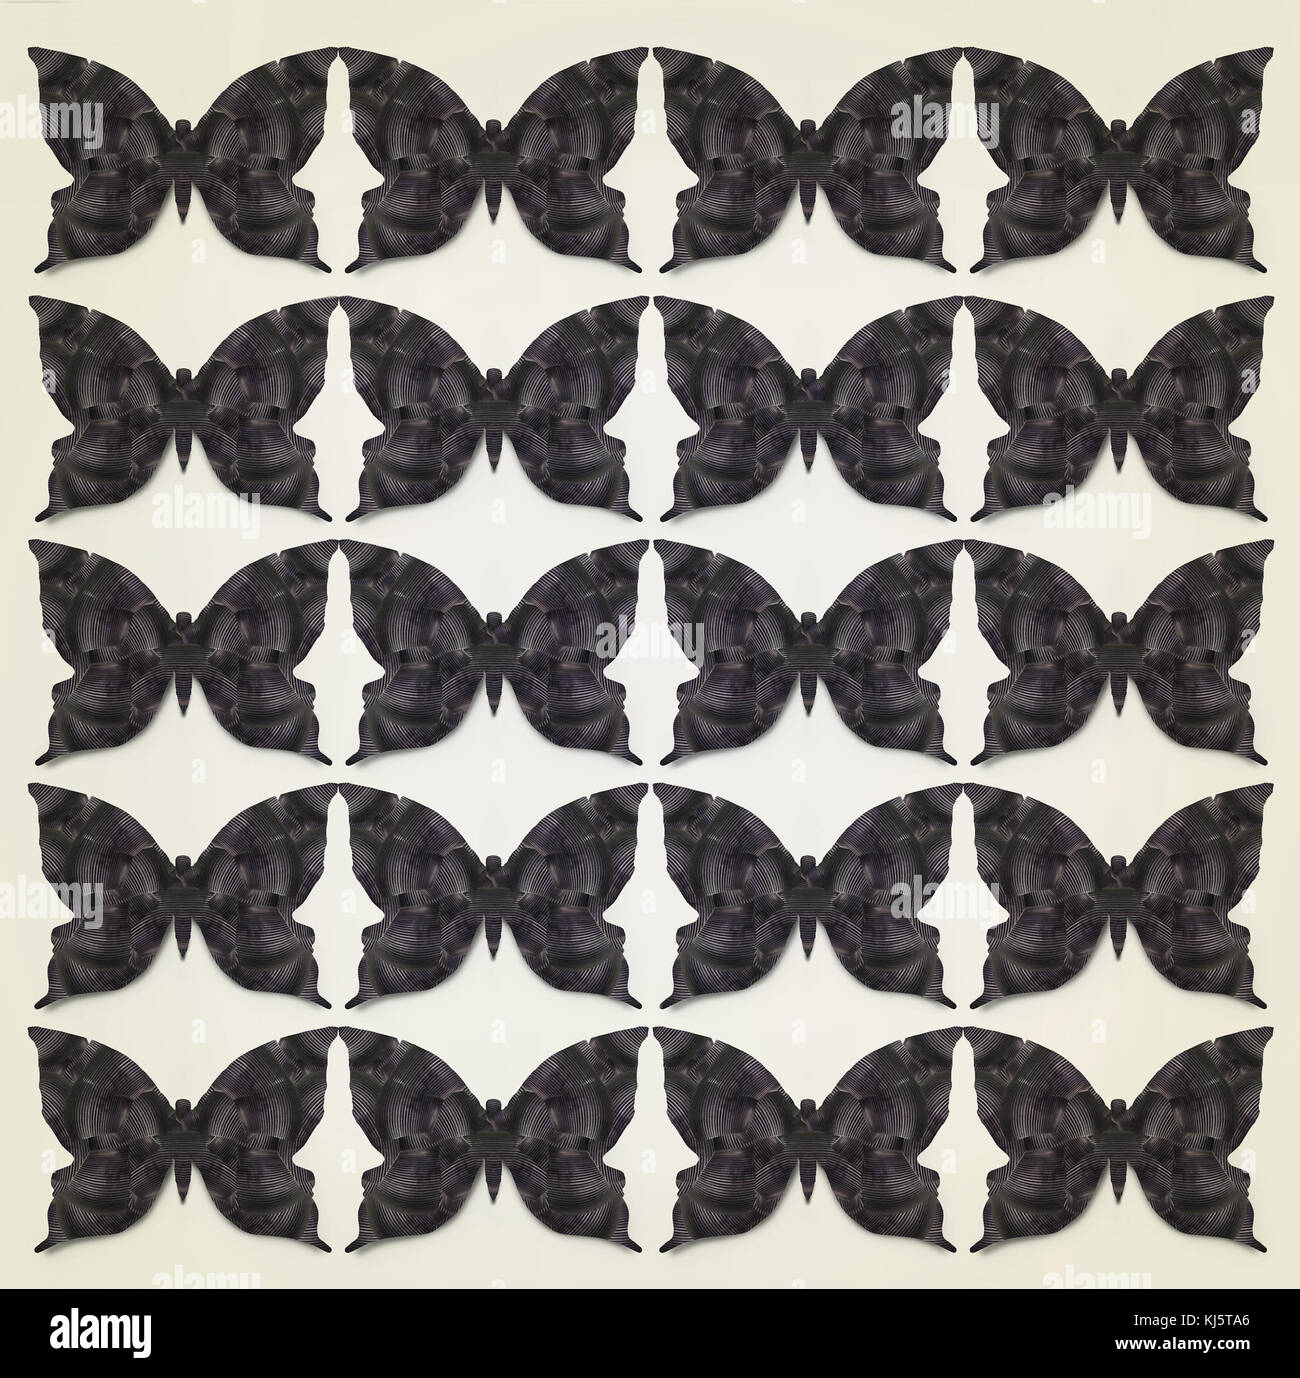 Belle abstract graphic noir stylisé répété papillons Banque D'Images